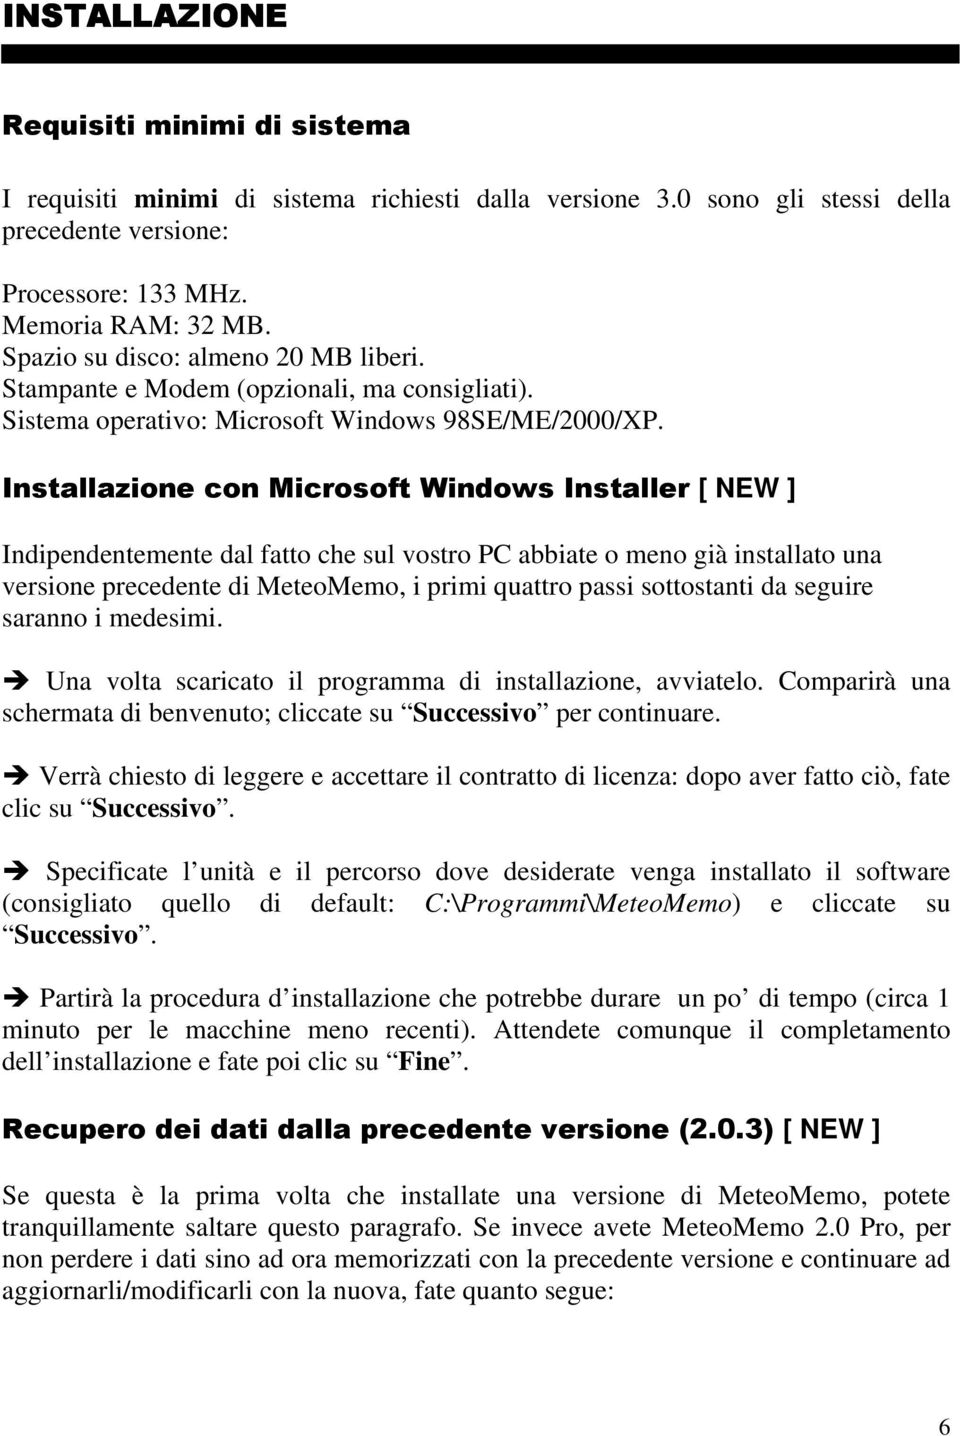 Installazione con Microsoft Windows Installer [ NEW ] Indipendentemente dal fatto che sul vostro PC abbiate o meno già installato una versione precedente di MeteoMemo, i primi quattro passi